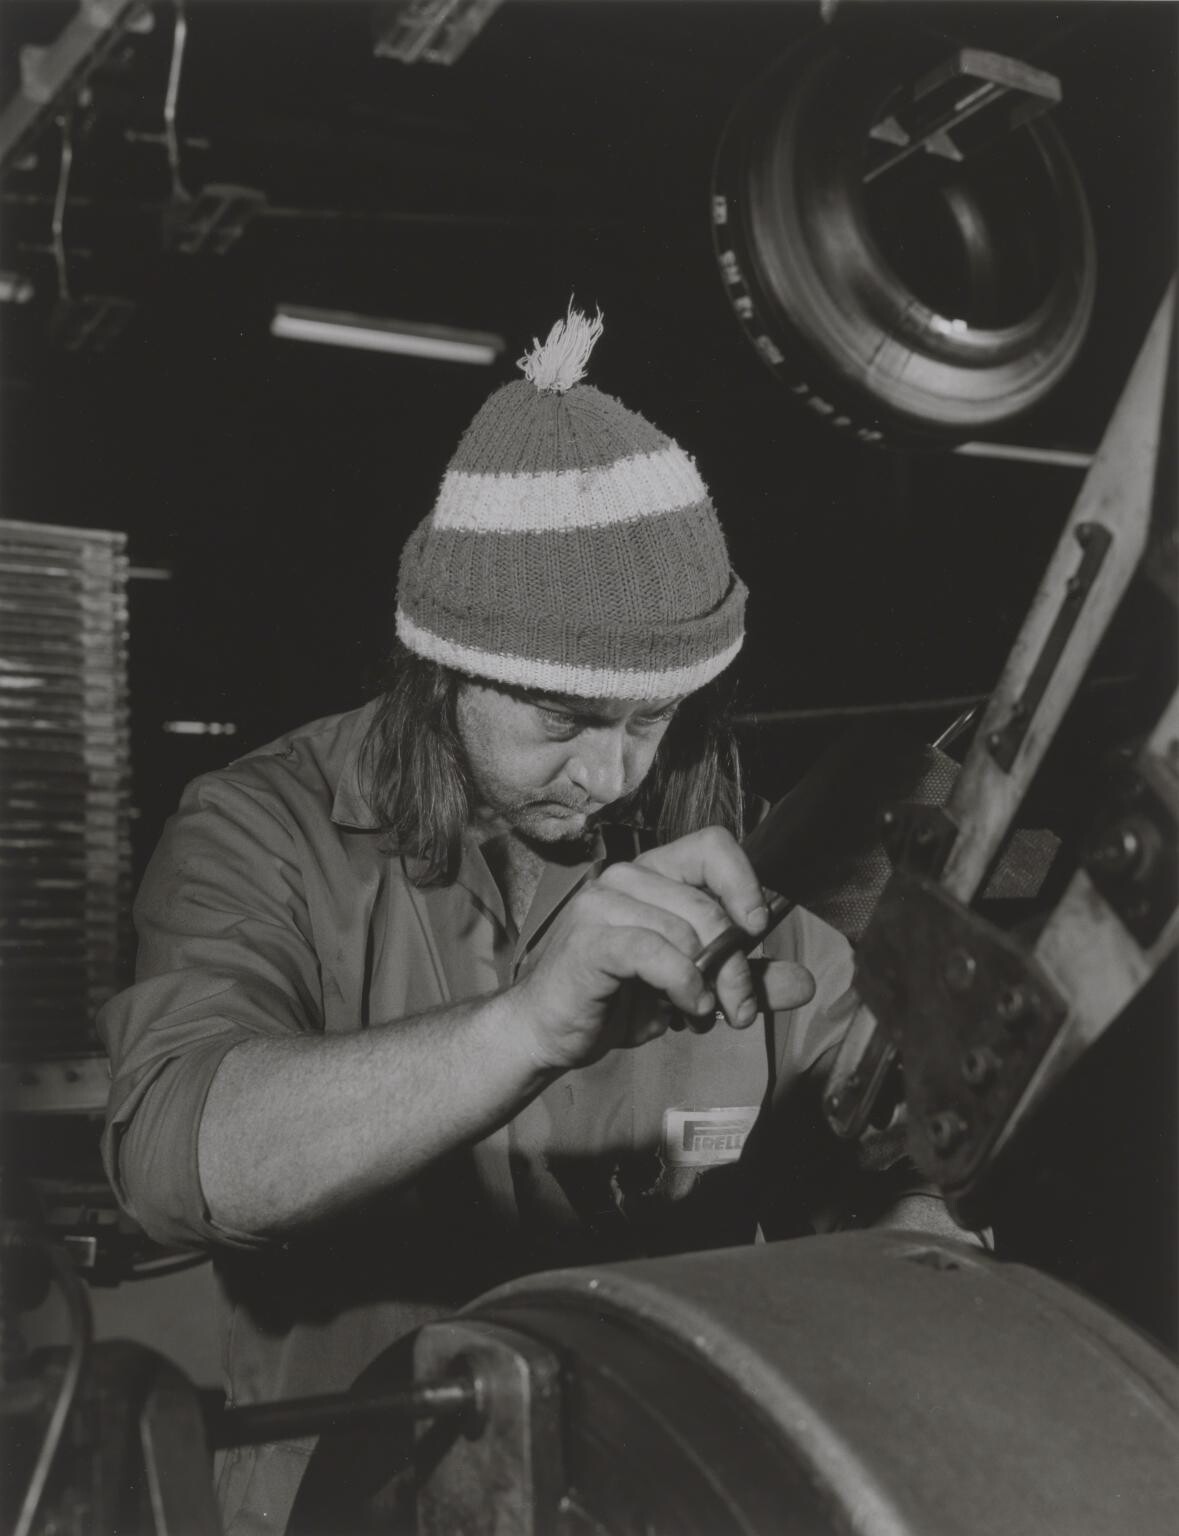 Производитель грузовых шин 1990 год. Фотограф Крис Киллип